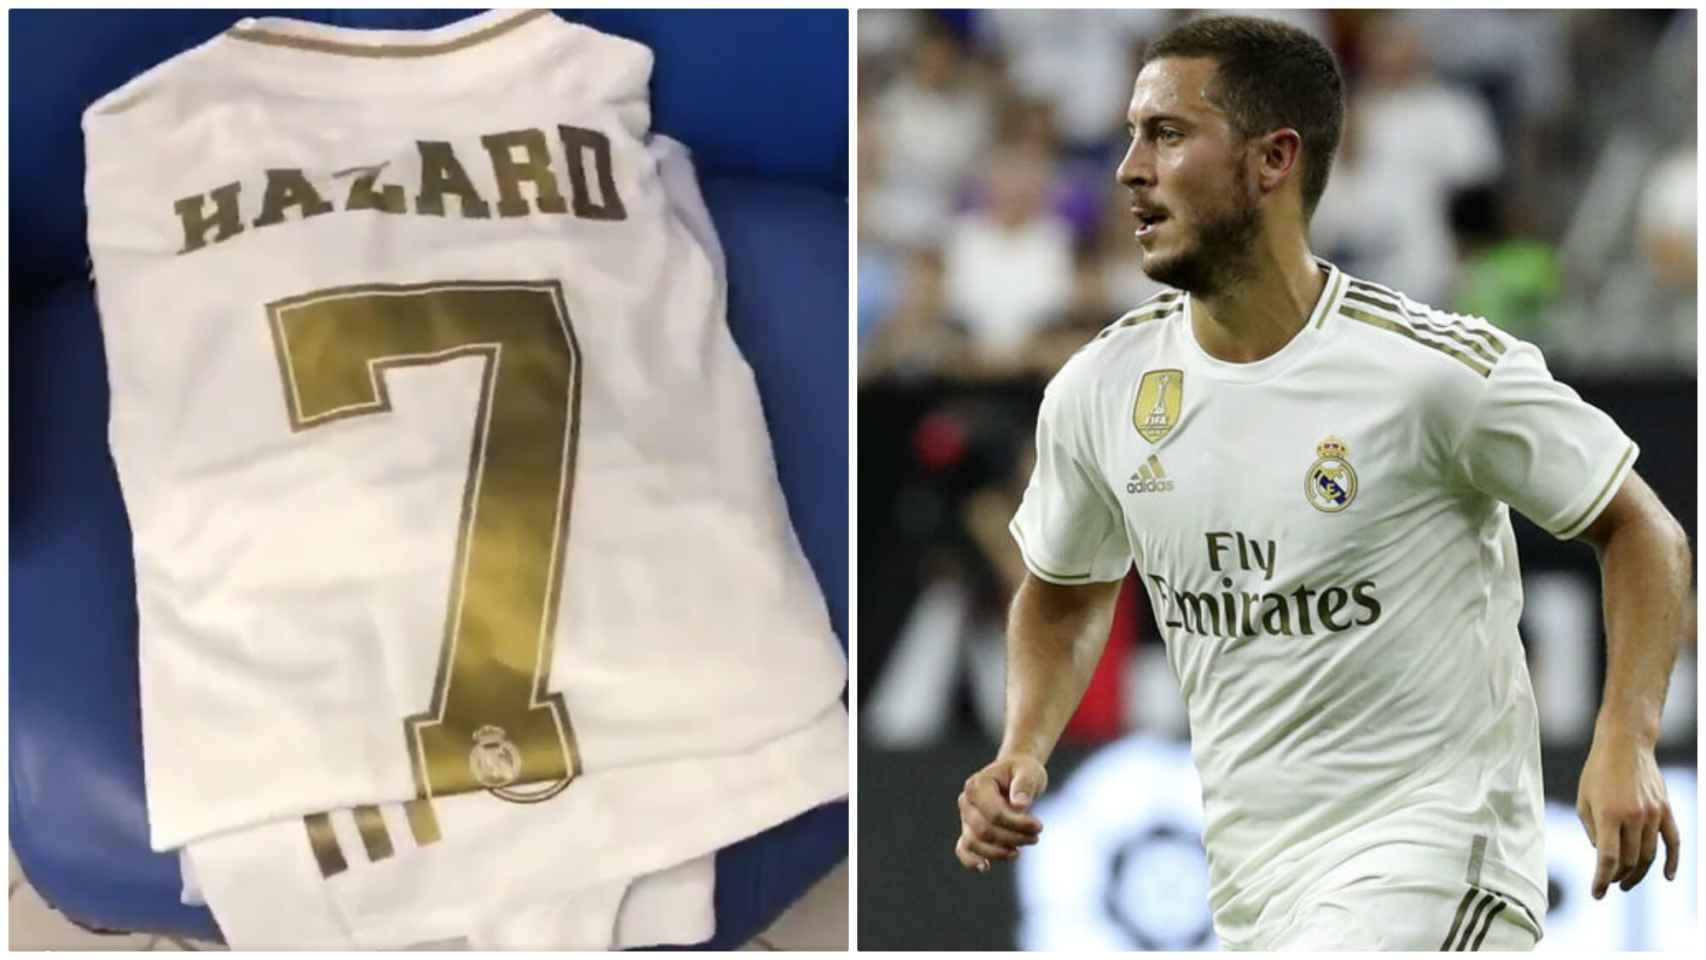 Confirmada la camiseta que lucirá el Real Madrid en la final - AS